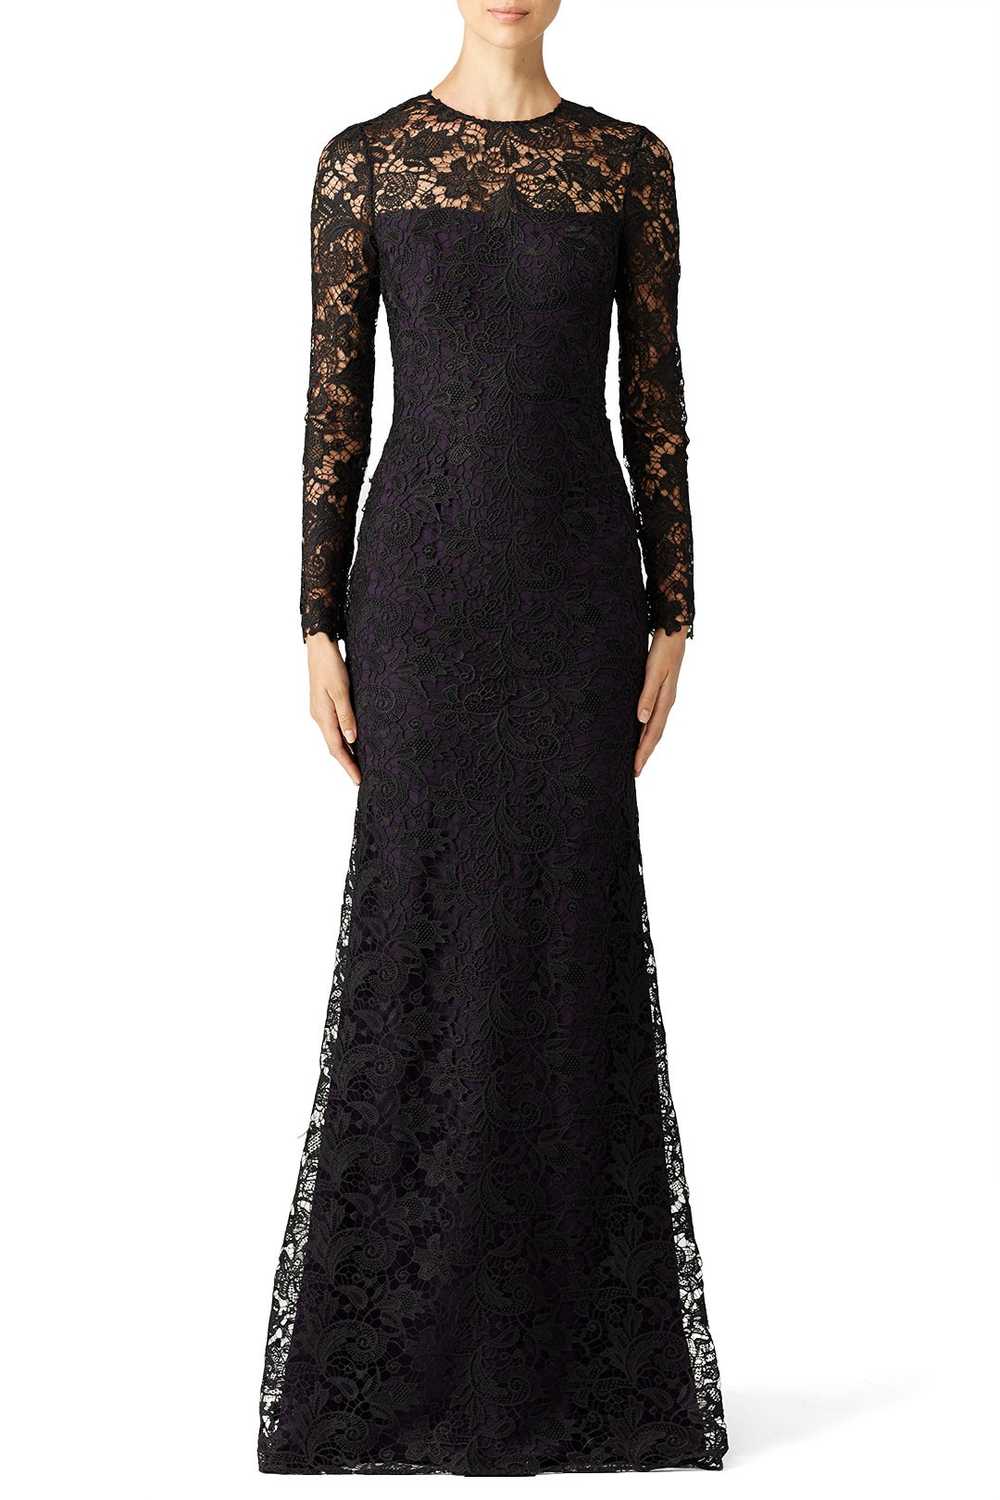 ML Monique Lhuillier Black Lace Tower Gown - image 1